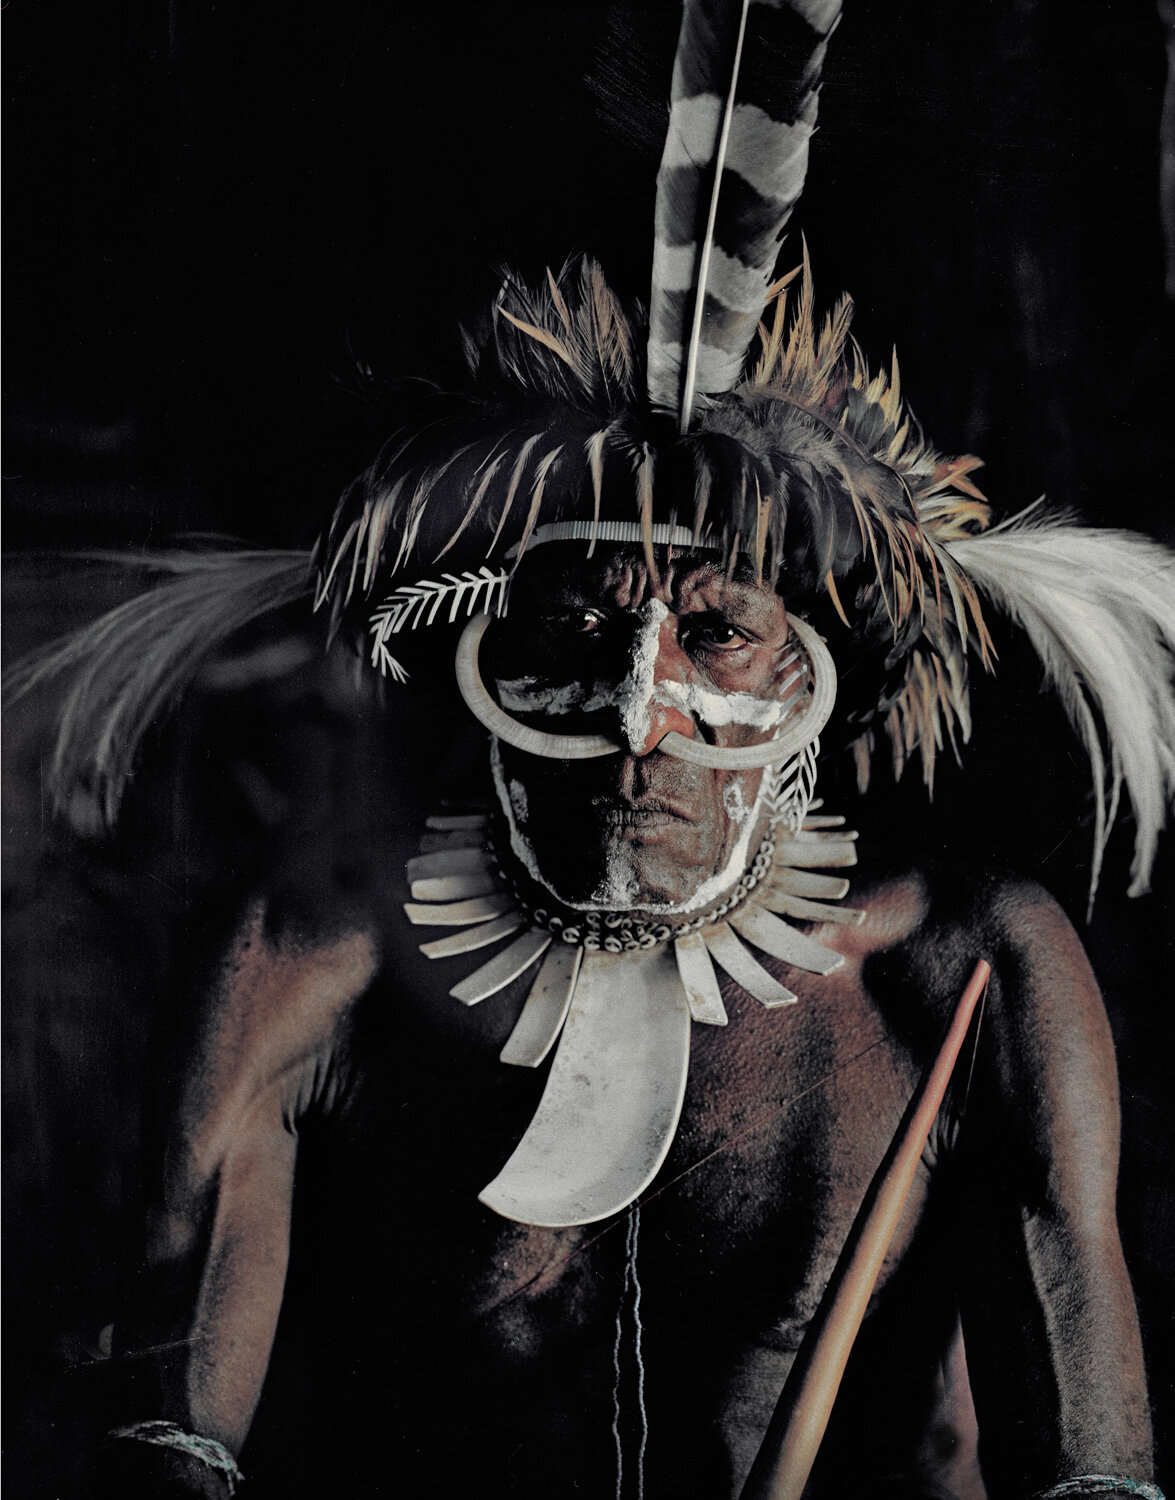 Dani Tribal leader Wamena, Baliem Valley, Papua, Jimmy Nelson, August 2010.jpg